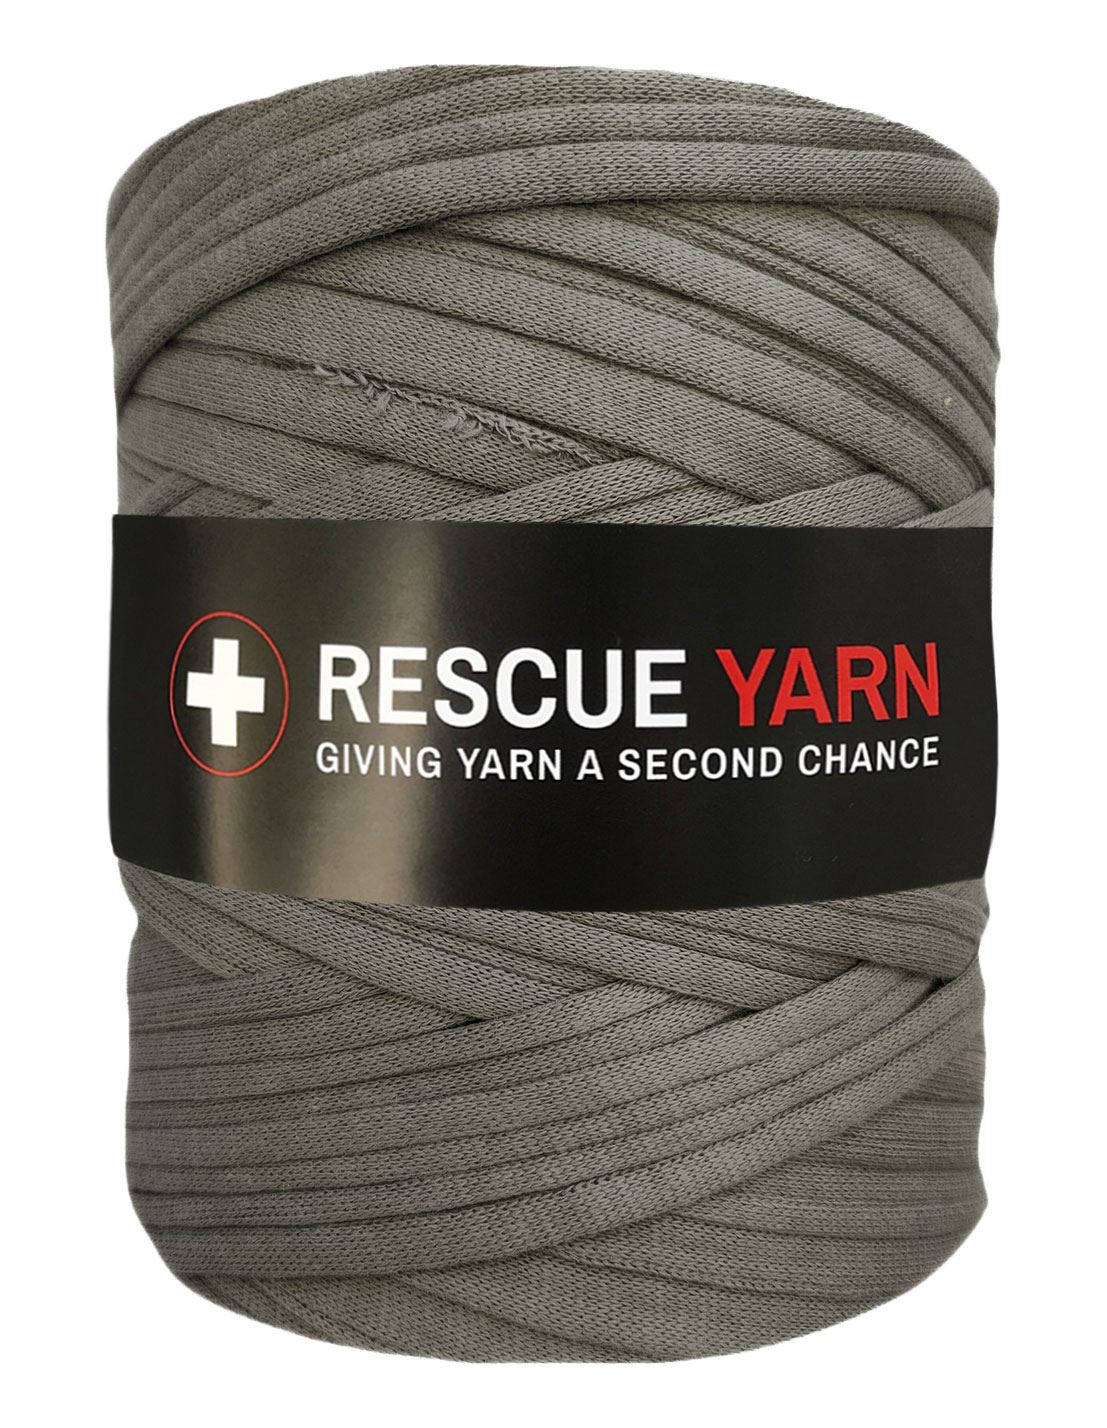 Fossil grey t-shirt yarn by Rescue Yarn (100-120m)